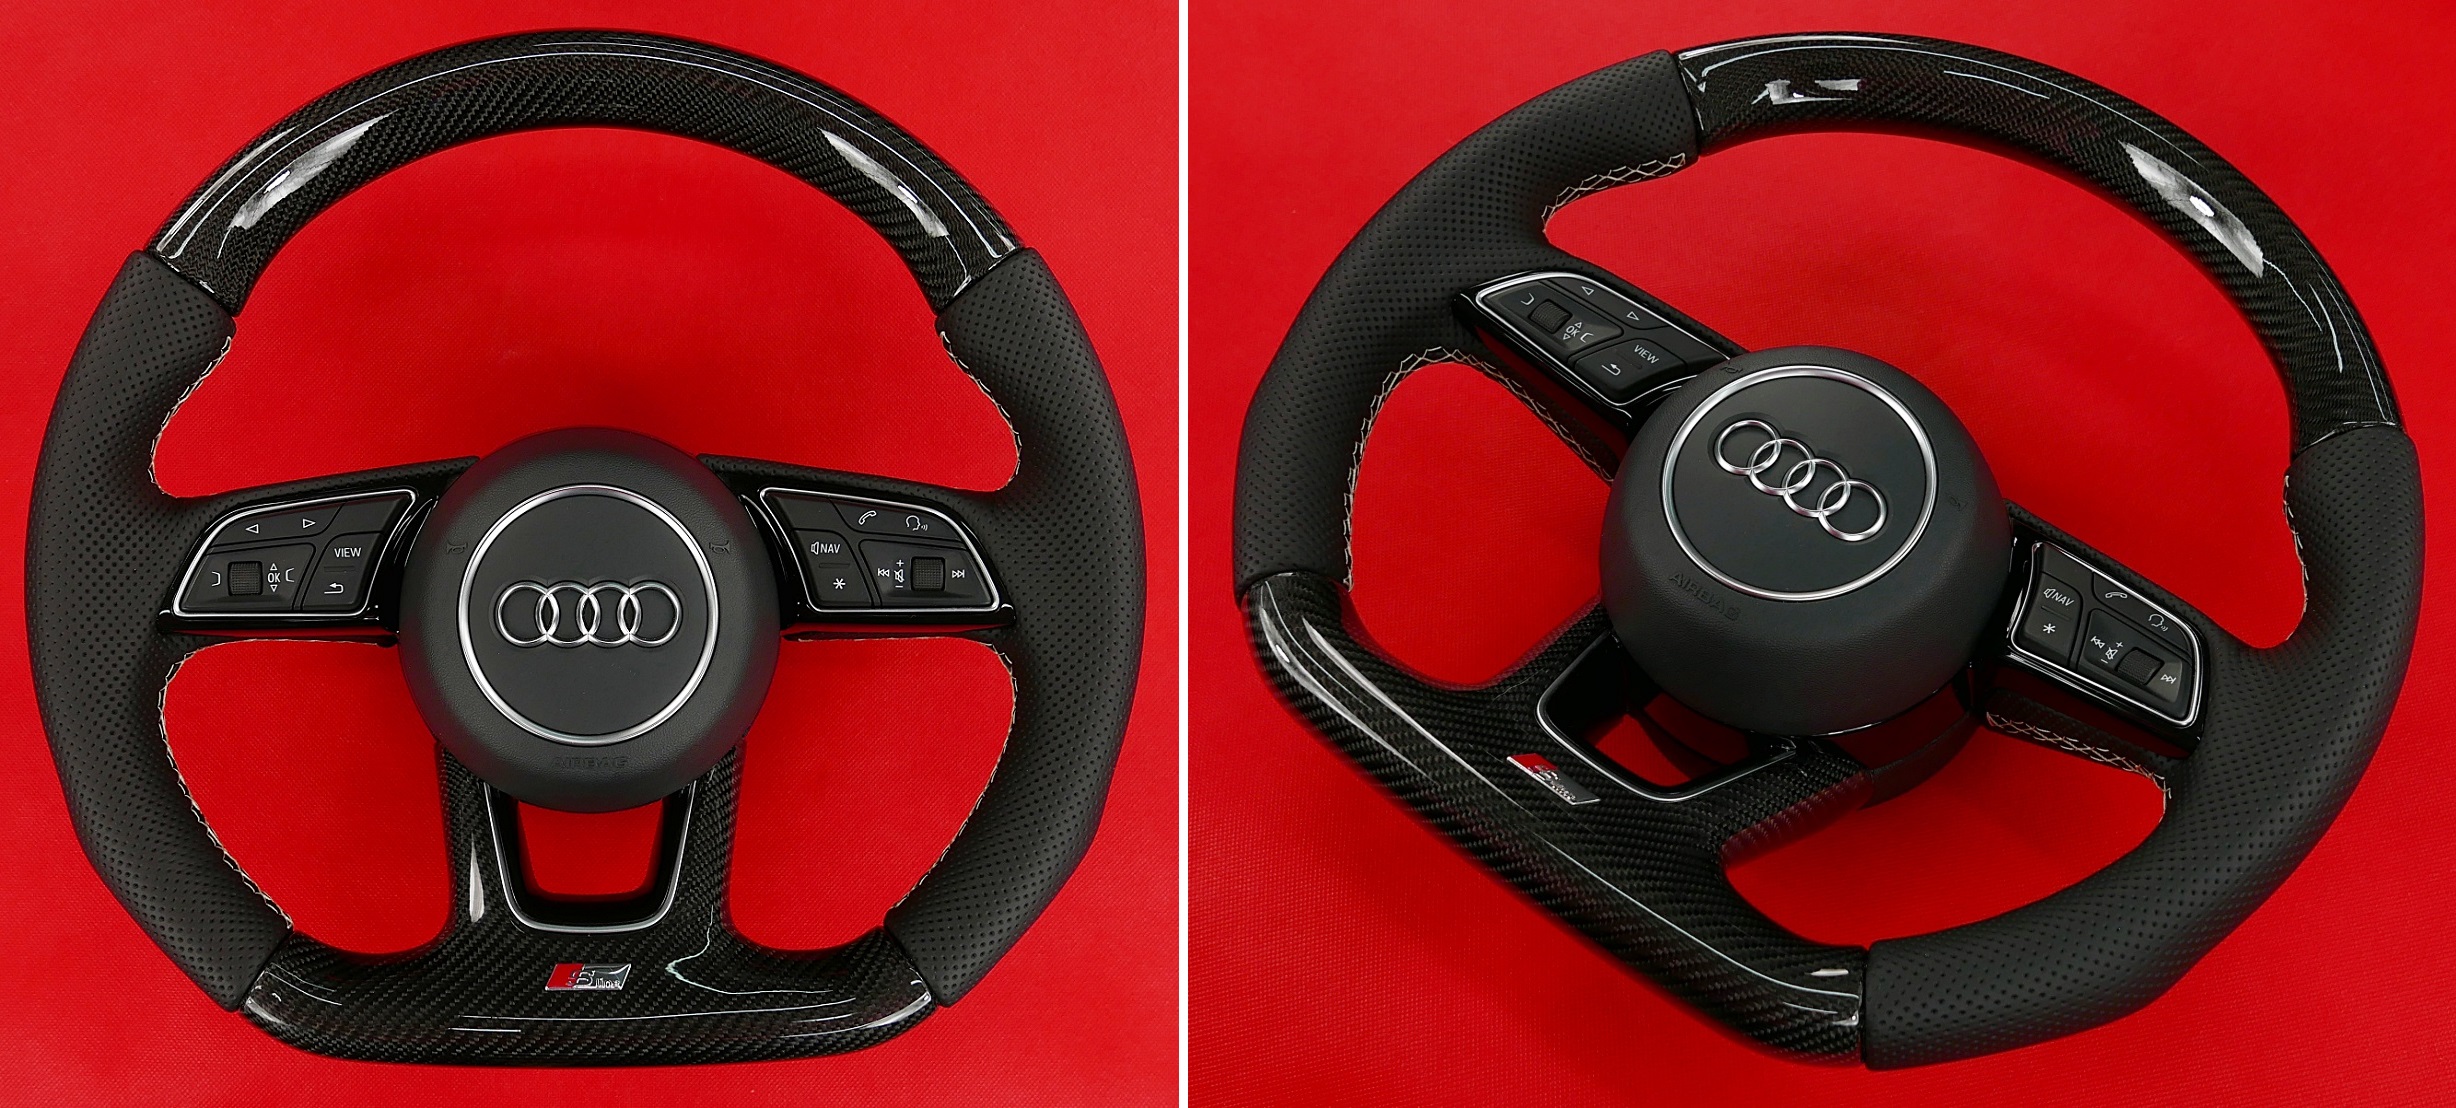 Kierownica Audi włókno węglowe carbon tuning modyfikacja zmiana kształtu obszywanie skórą